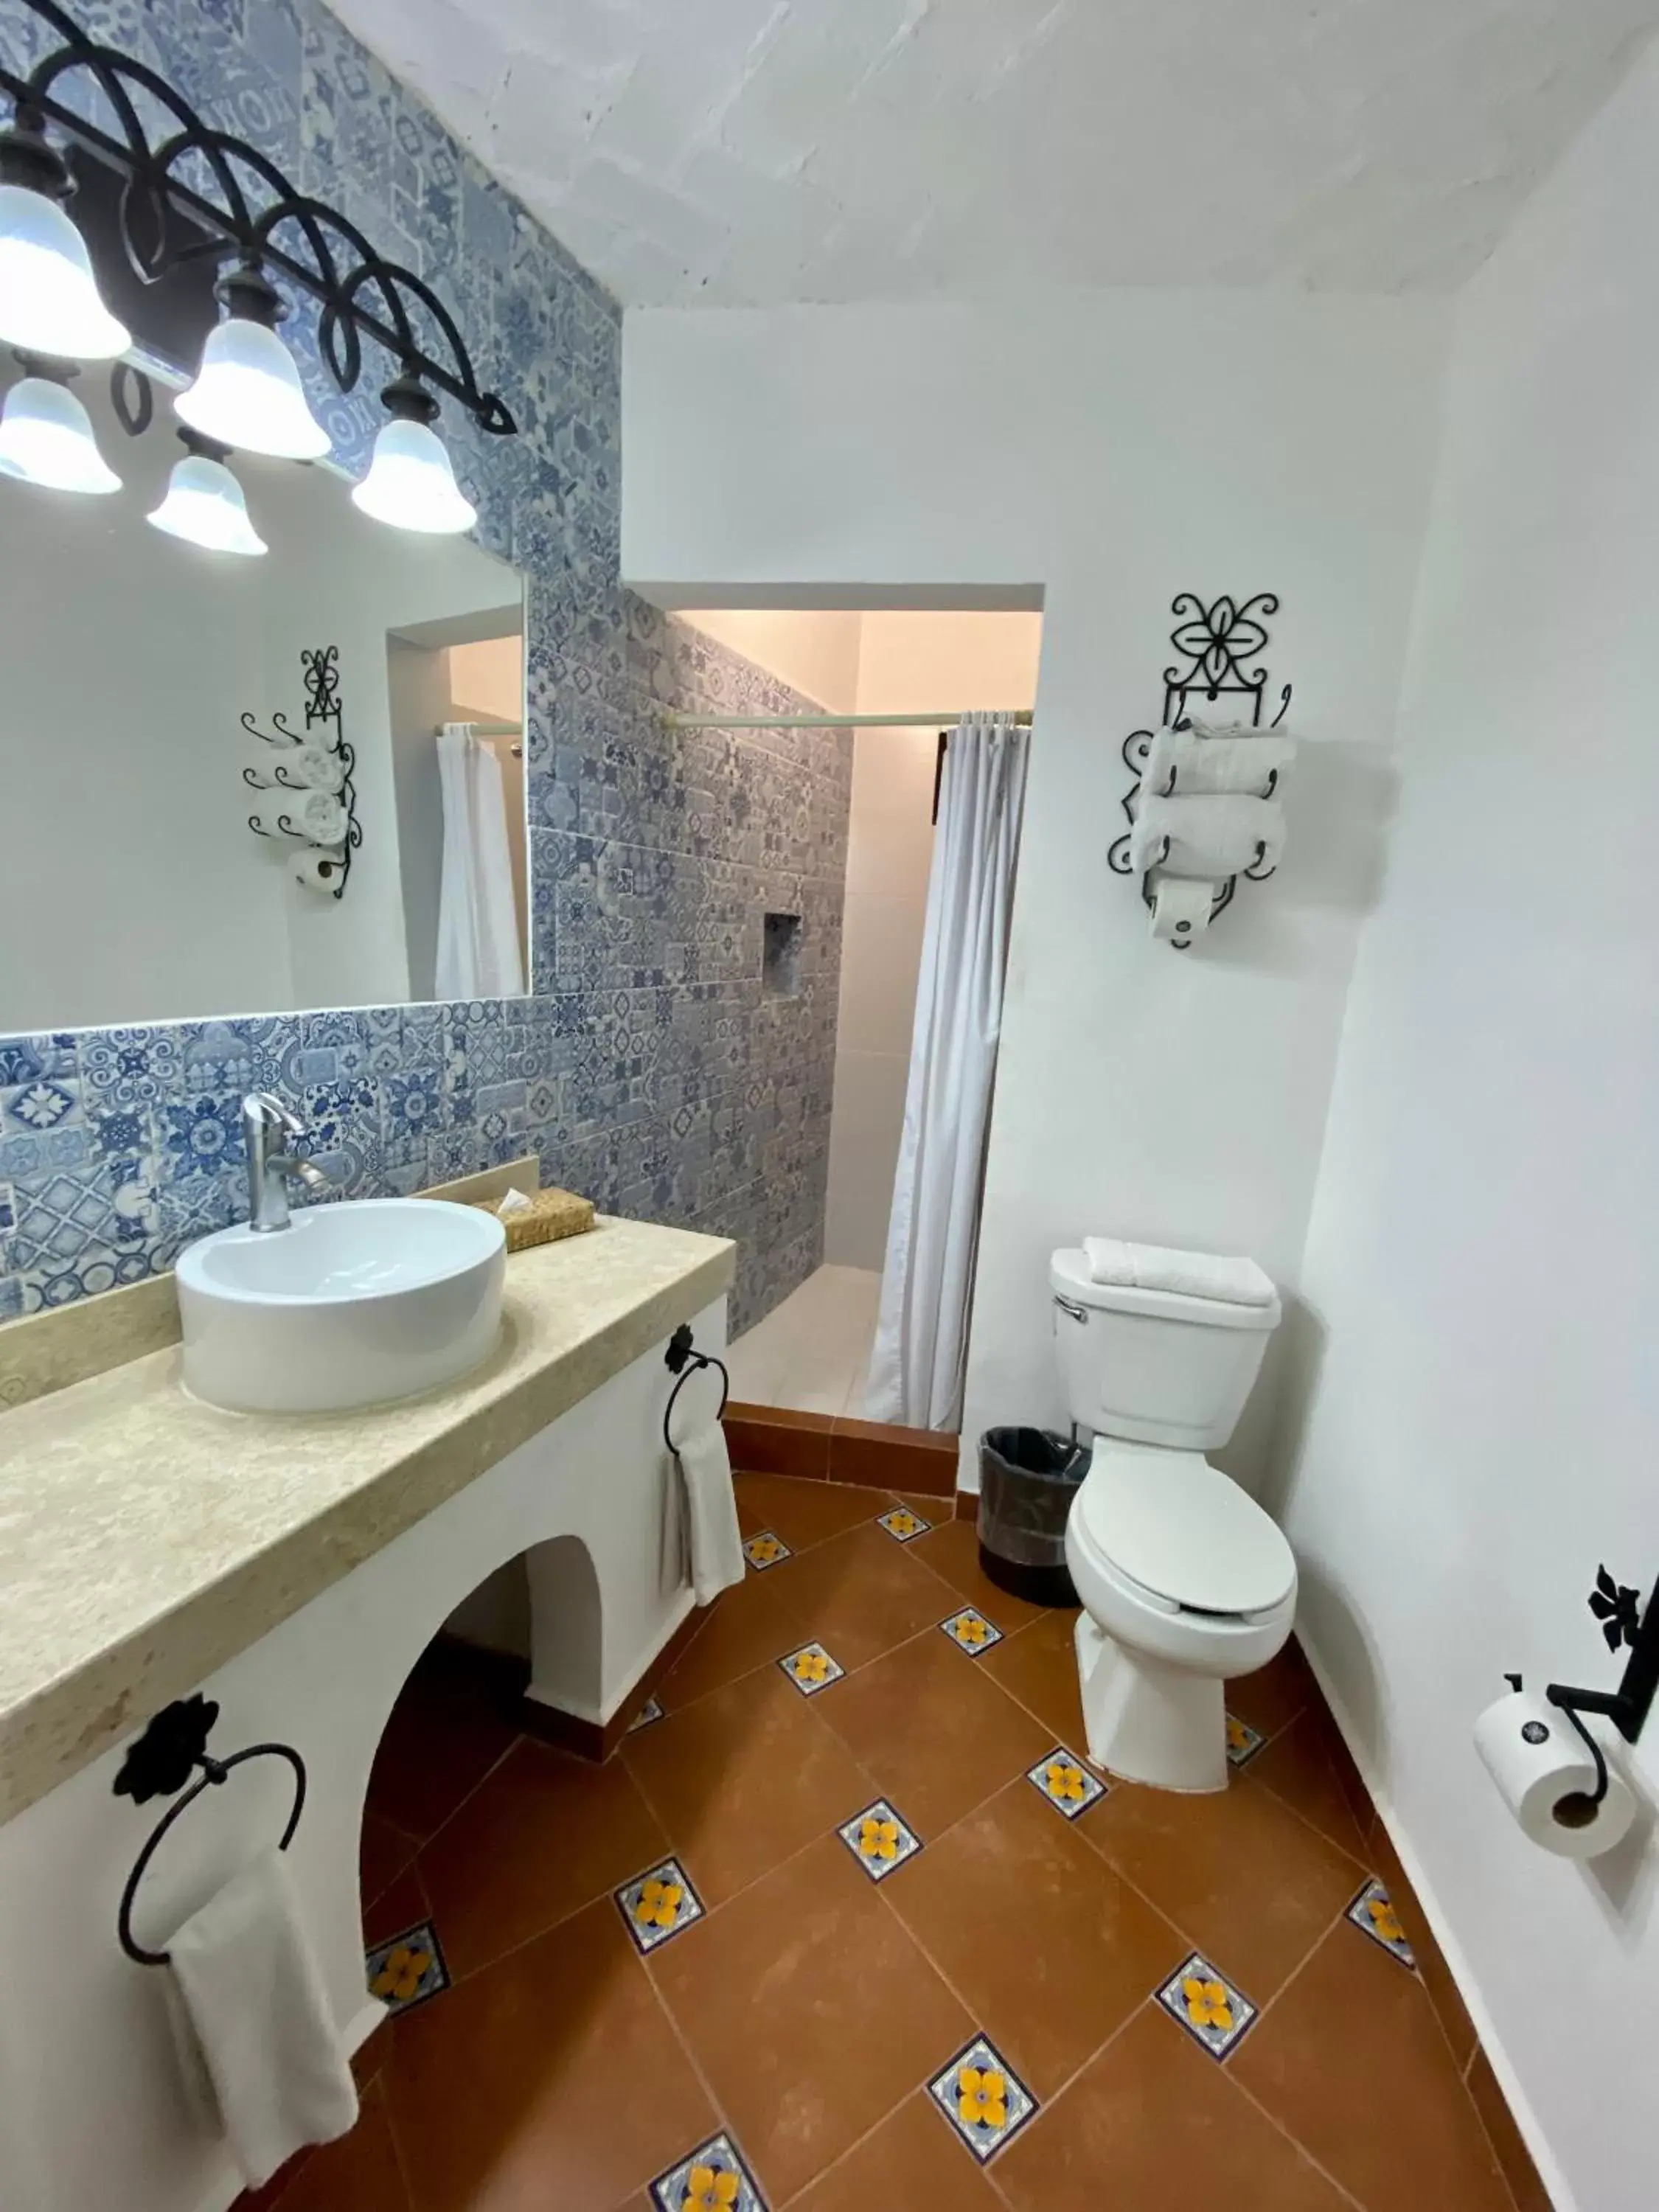 Bathroom in Hotel Hacienda Monteverde San Miguel de Allende